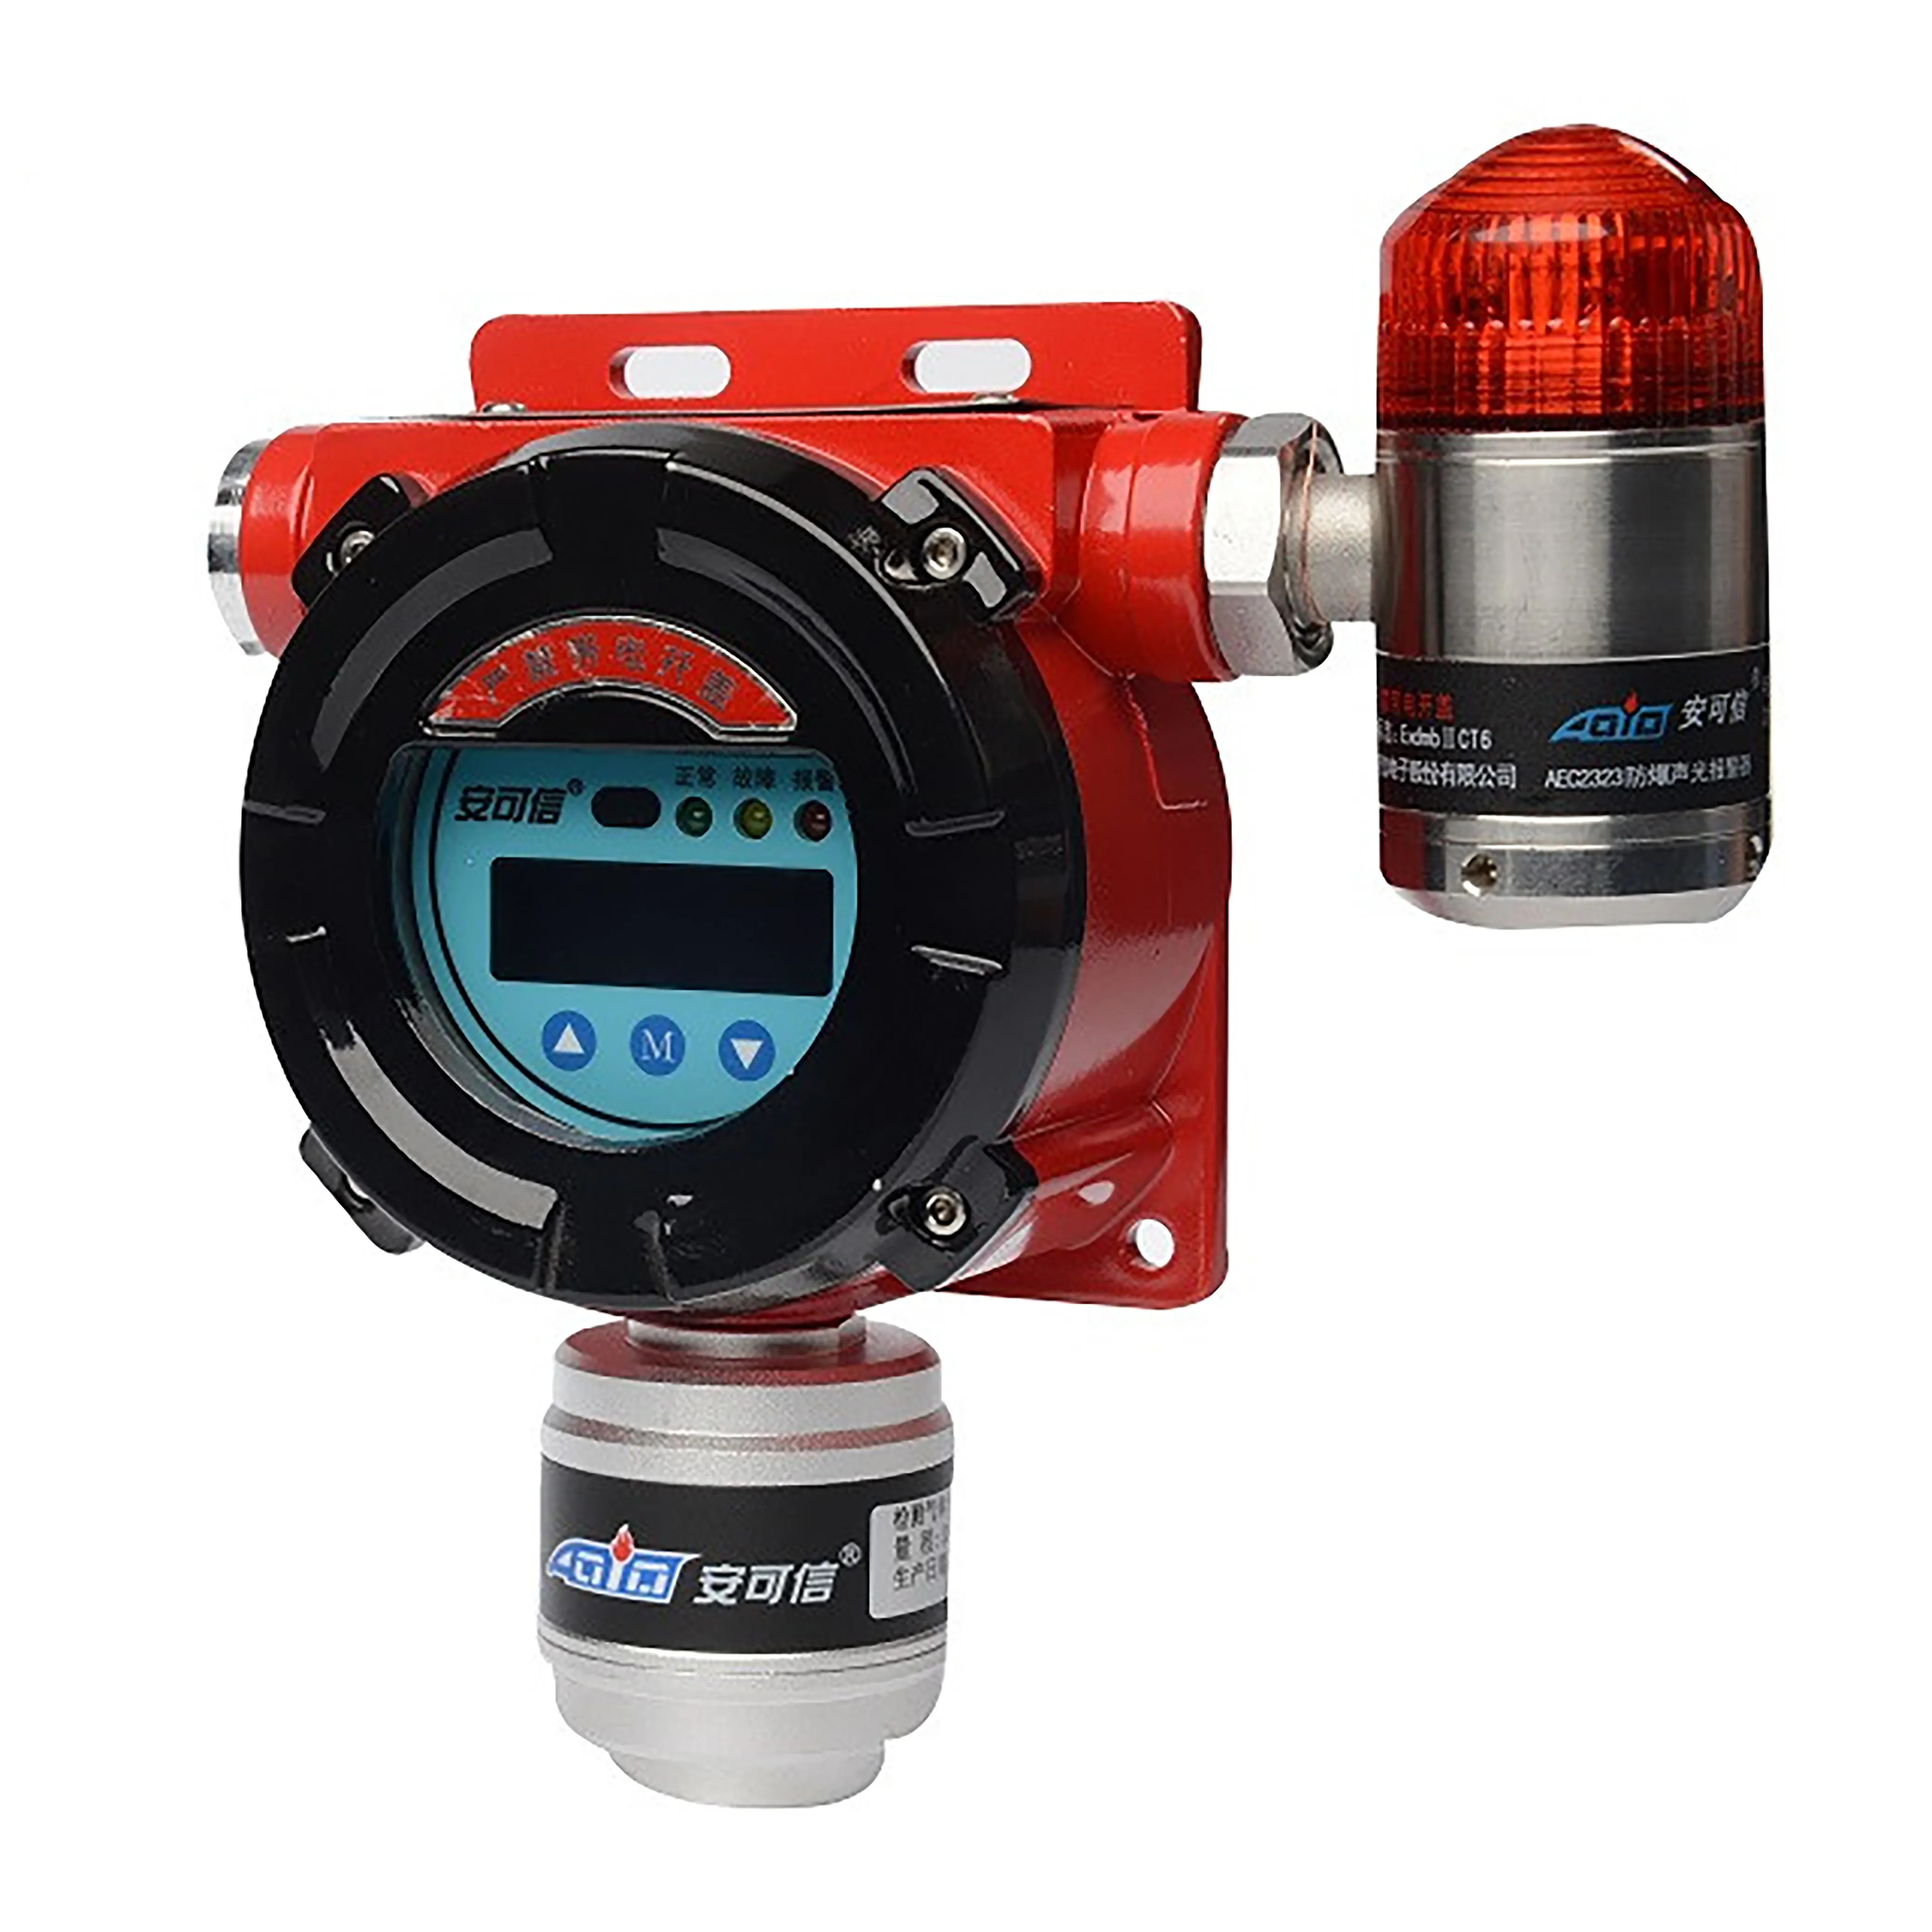 AEC2232bX Brandbare Gassen en Stoom Detector Industriële Vaste Gasdetector Geïntegreerde on-site Display Typ